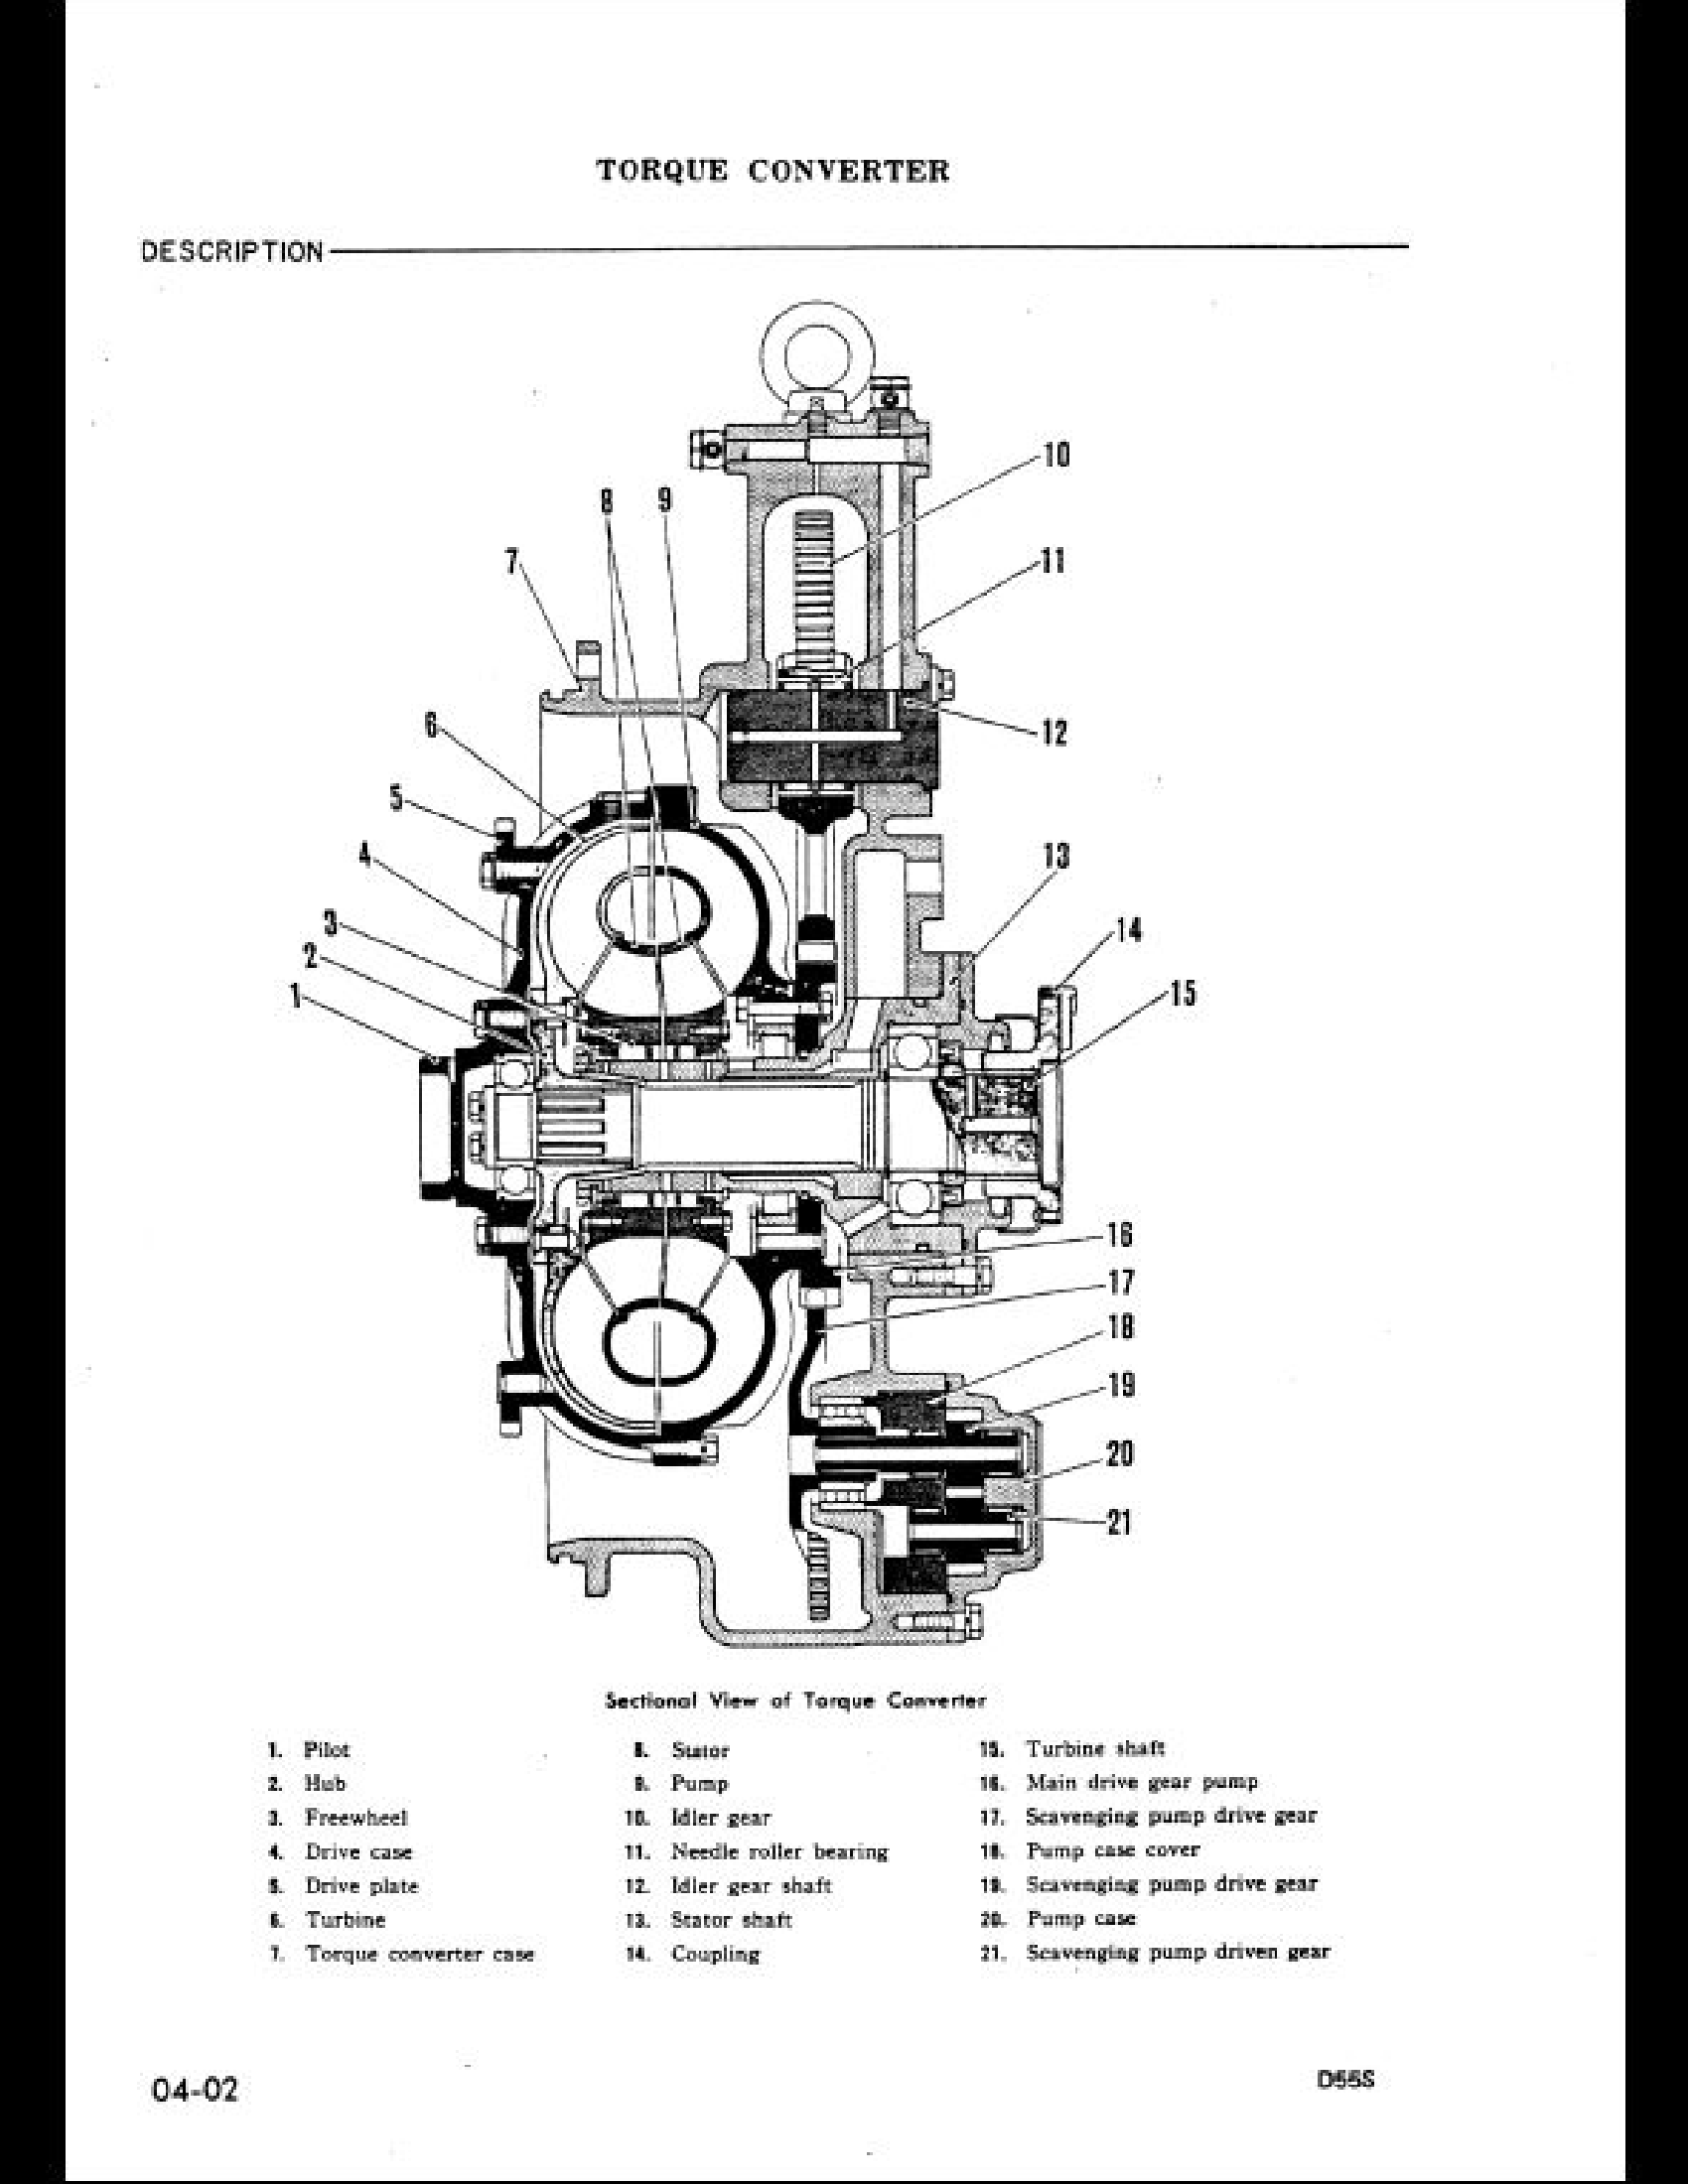 KOMATSU D55S-3 Bulldozer manual